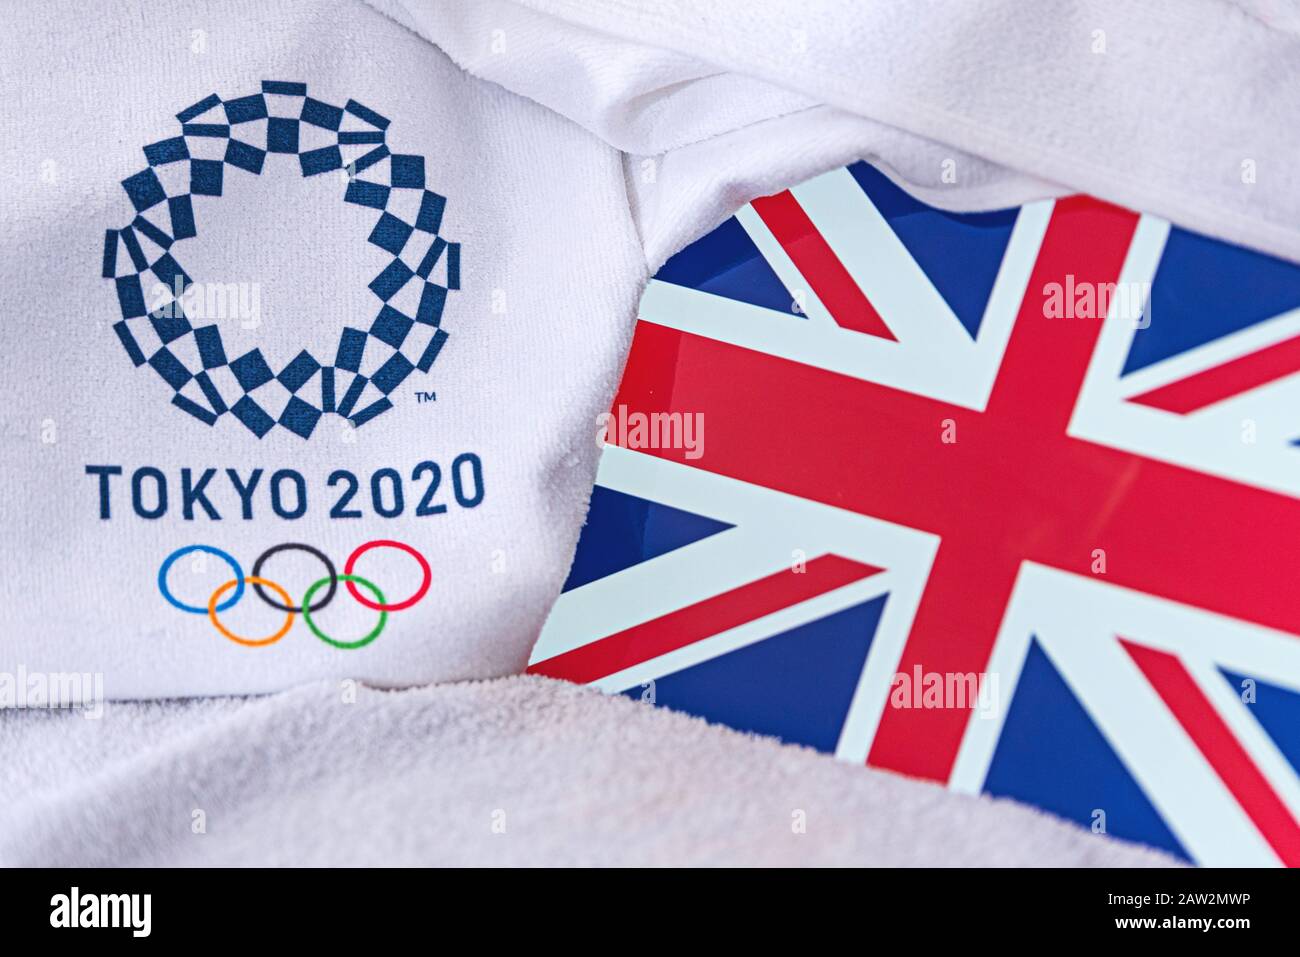 TOKIO, JAPAN, FEBRUAR. 4, 2020: Großbritannien, Nationalflaggen des Vereinigten Königreichs, offizielles Logo der Olympischen Sommerspiele in Tokio 2020. Weißer Hintergrund Stockfoto